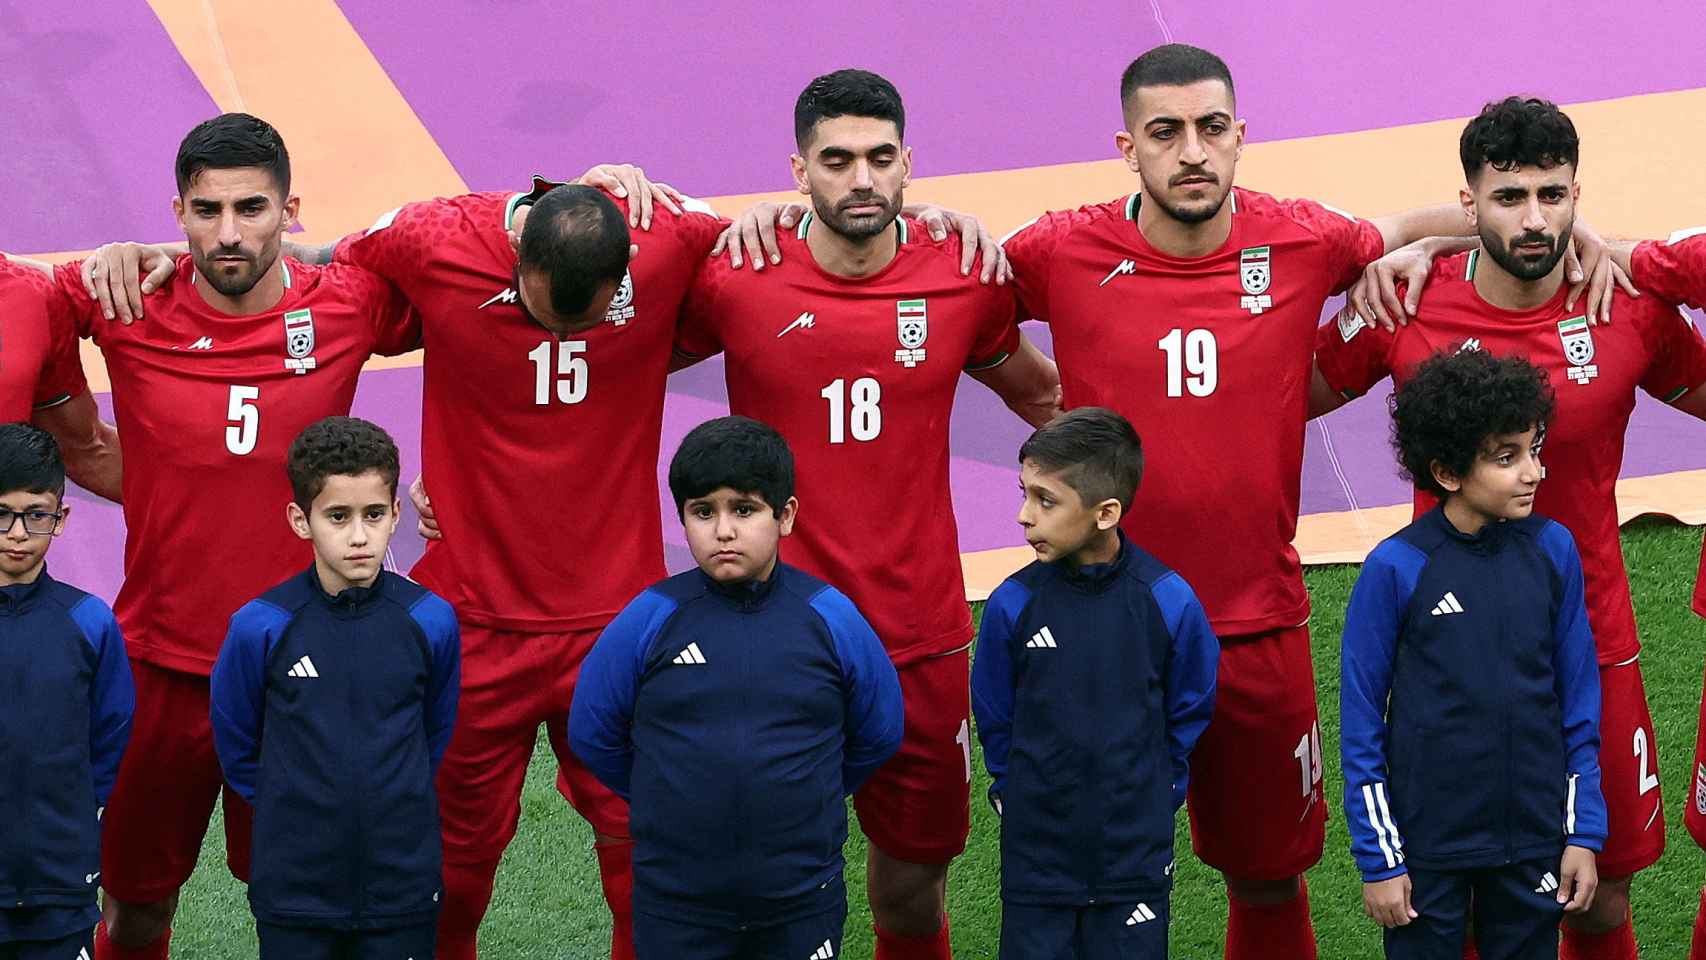 Los futbolistas de Irán escuchan el himno de su país en silencio sin cantarlo